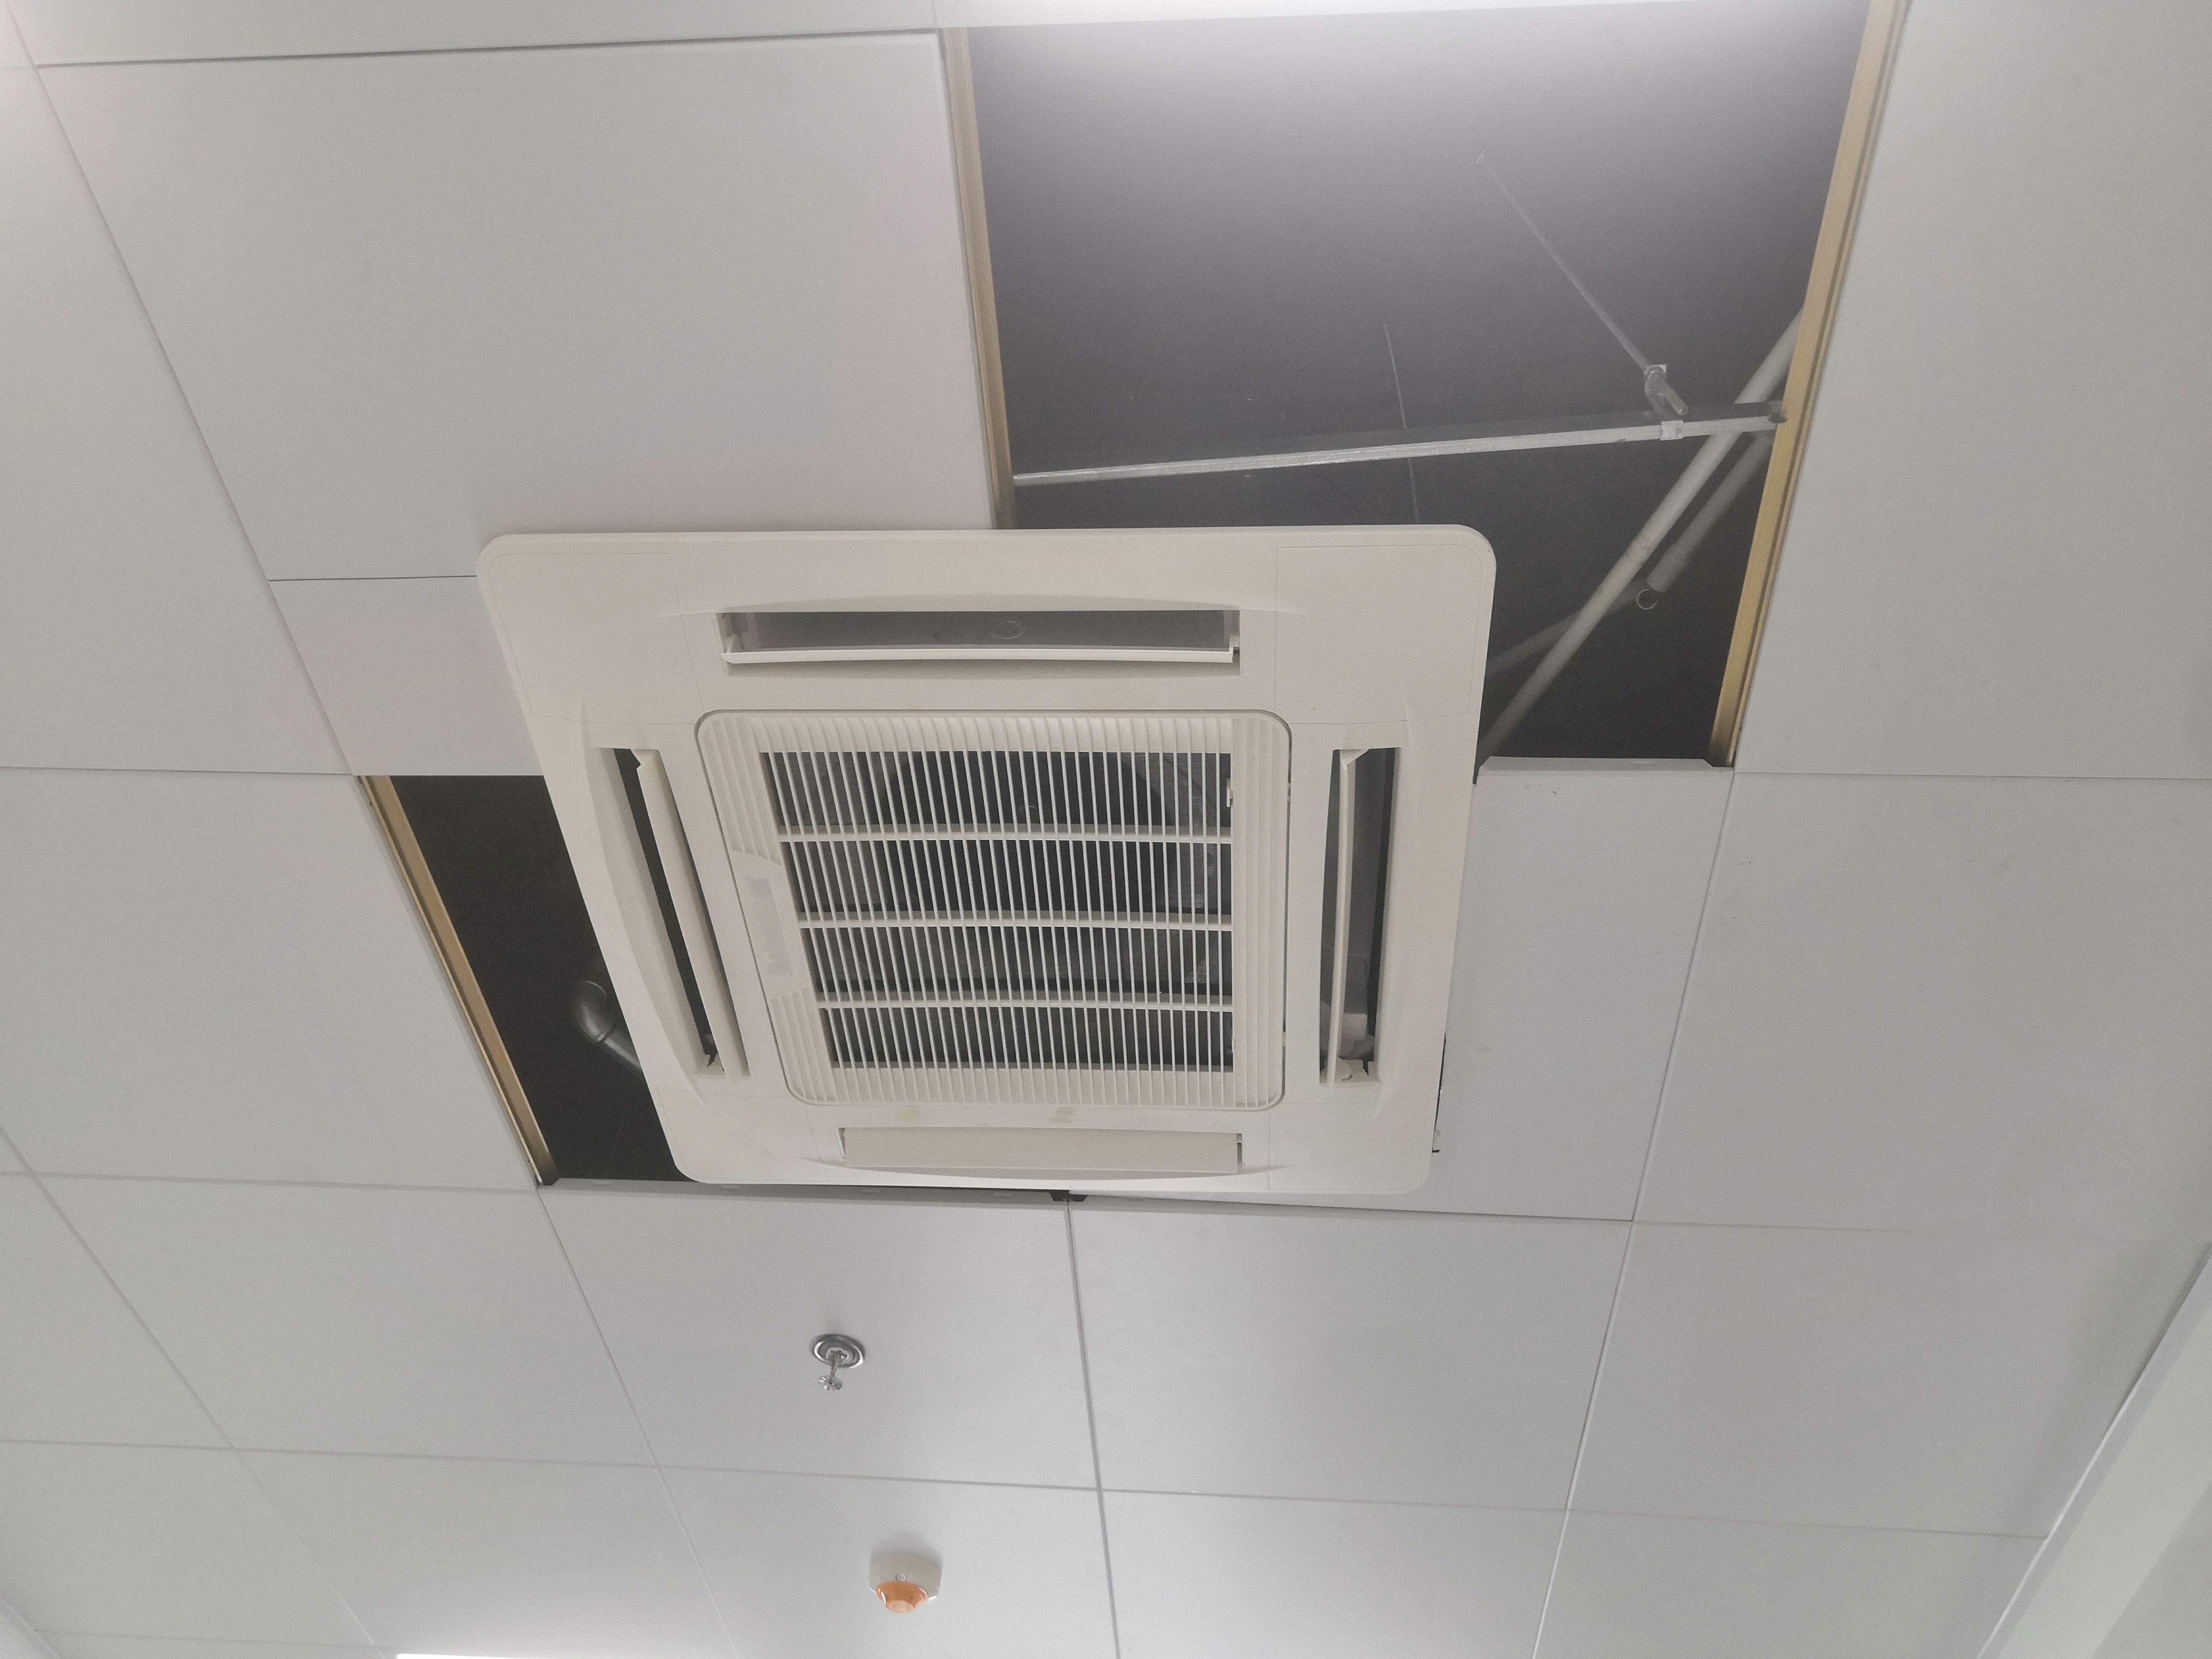 广州商铺餐厅中央空调设计安装 嵌入式风机盘管 不需风管风口空调